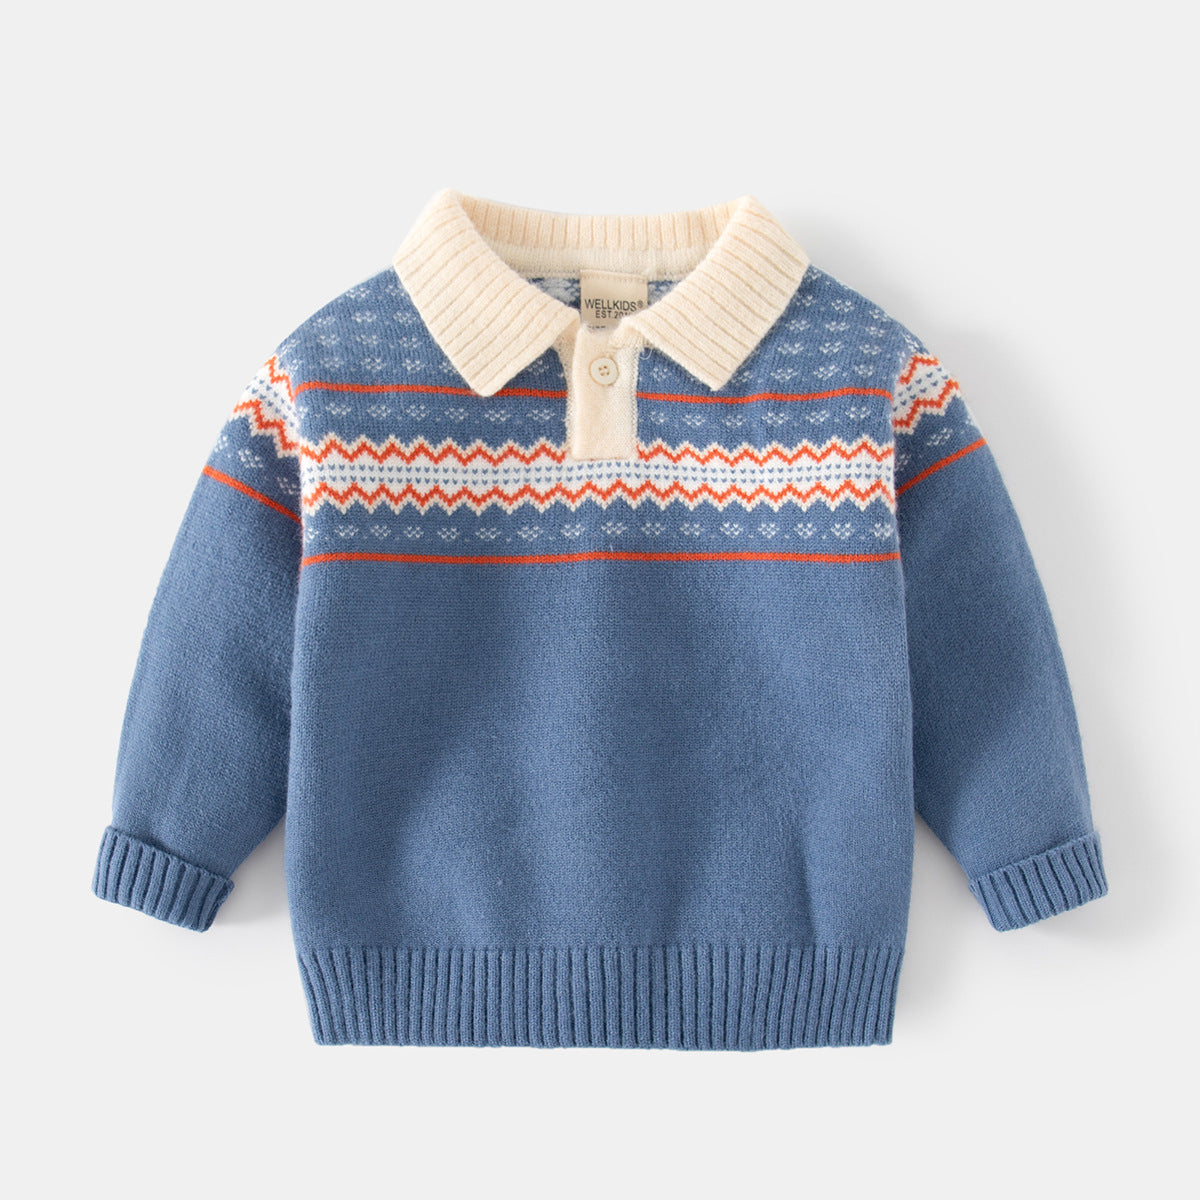 [513664] - Atasan Sweater Rajut Polo Kerah Import Anak Laki-Laki - Motif Neat Abstract